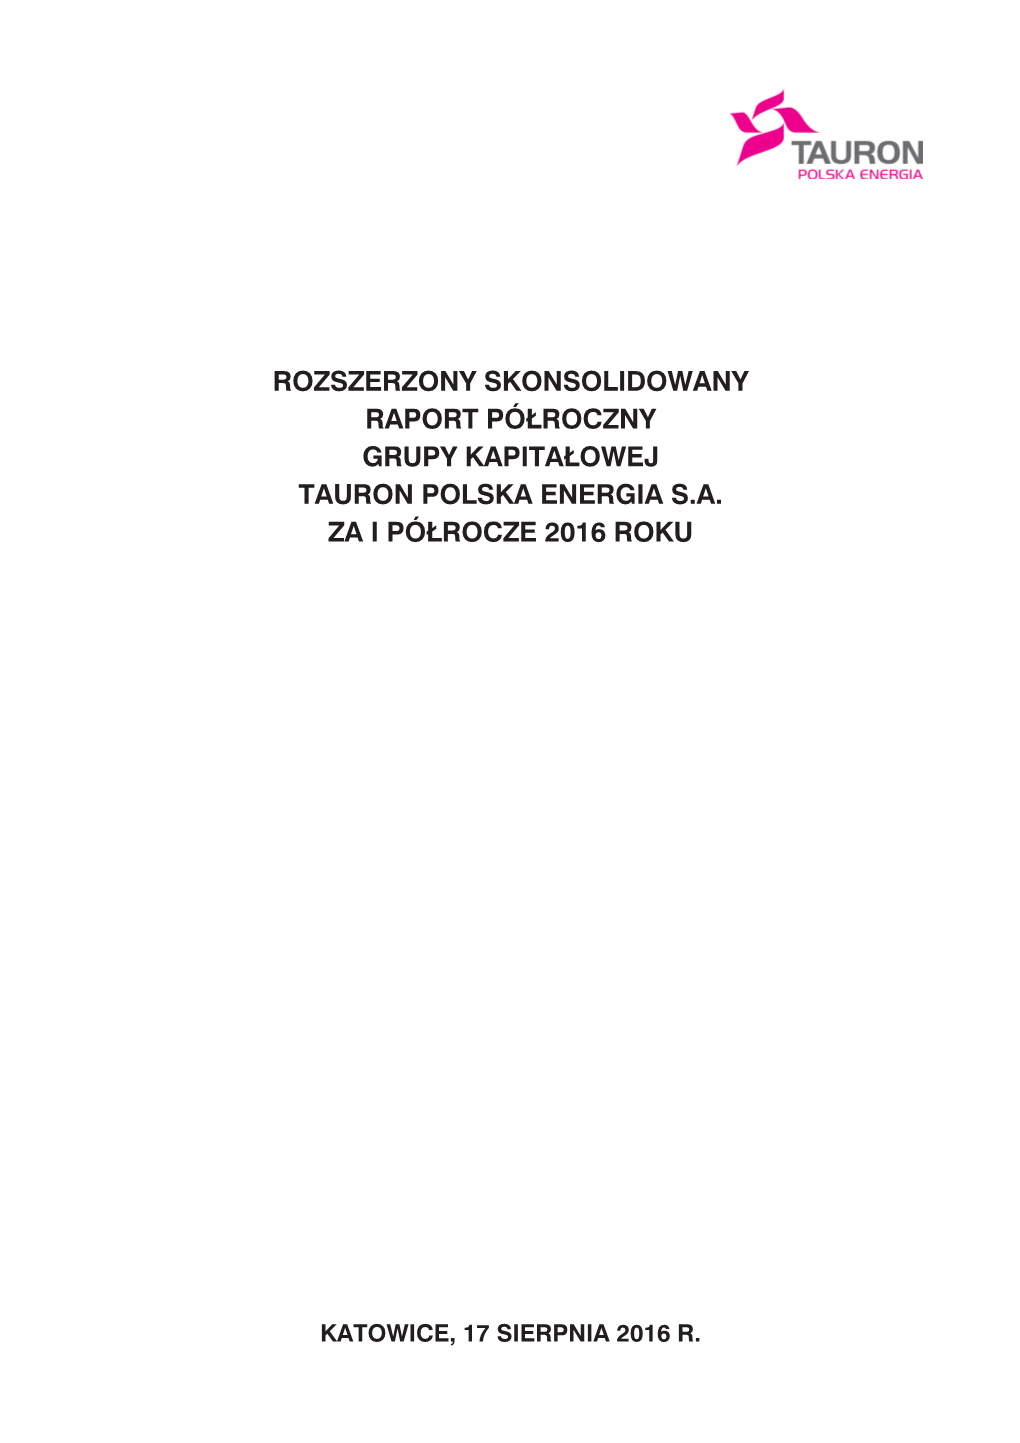 Rozszerzony Skonsolidowany Raport Półroczny Grupy Kapita£Owej Tauron Polska Energia S.A. Za I Półrocze 2016 Roku